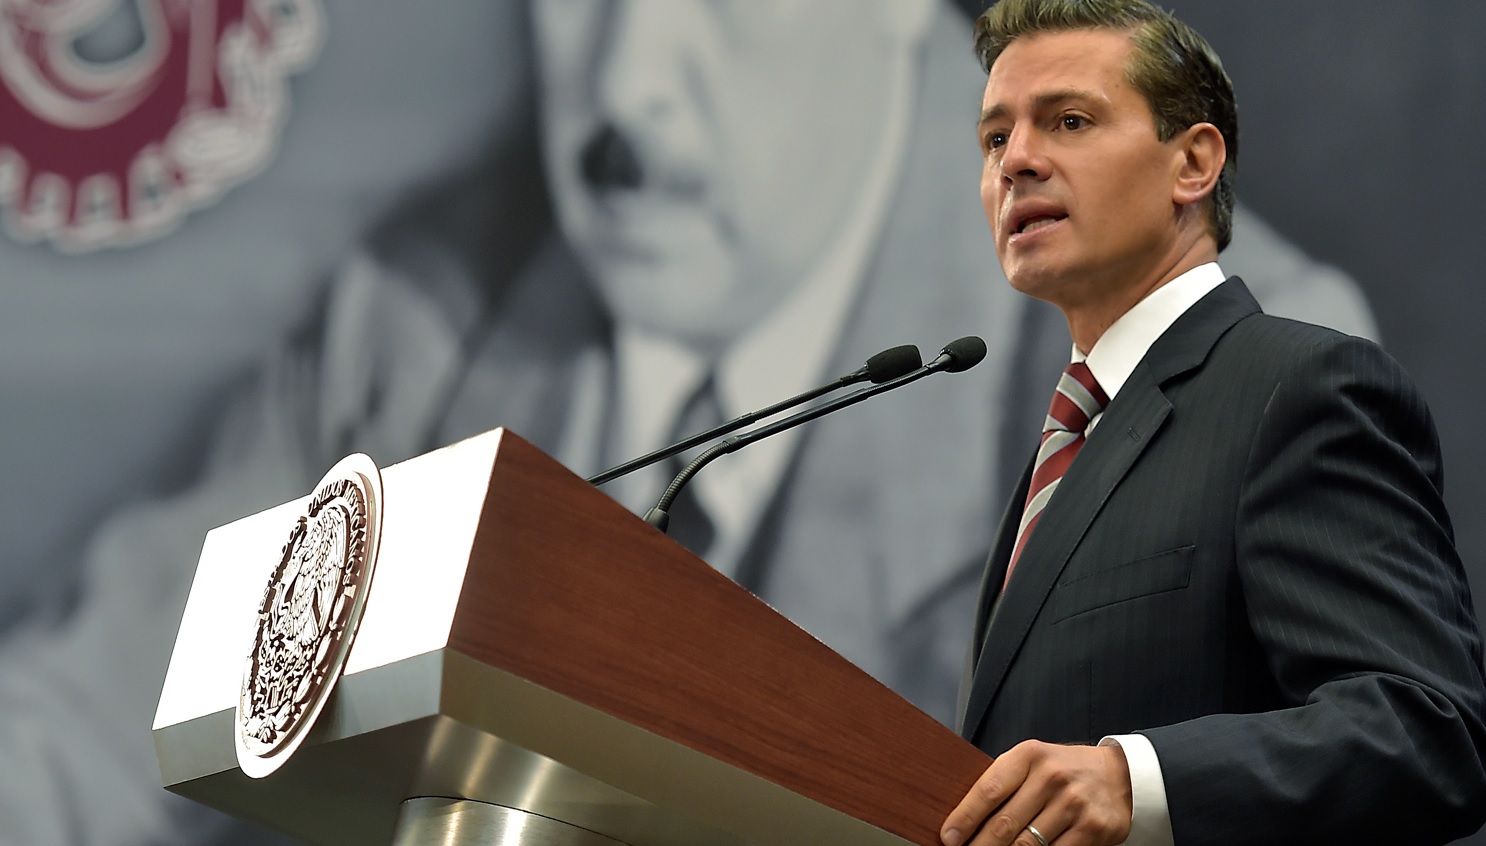 La modernización de TLC beneficiará a México y América del Norte aseguró el presidente Peña Nieto. (Presidencia de la República)